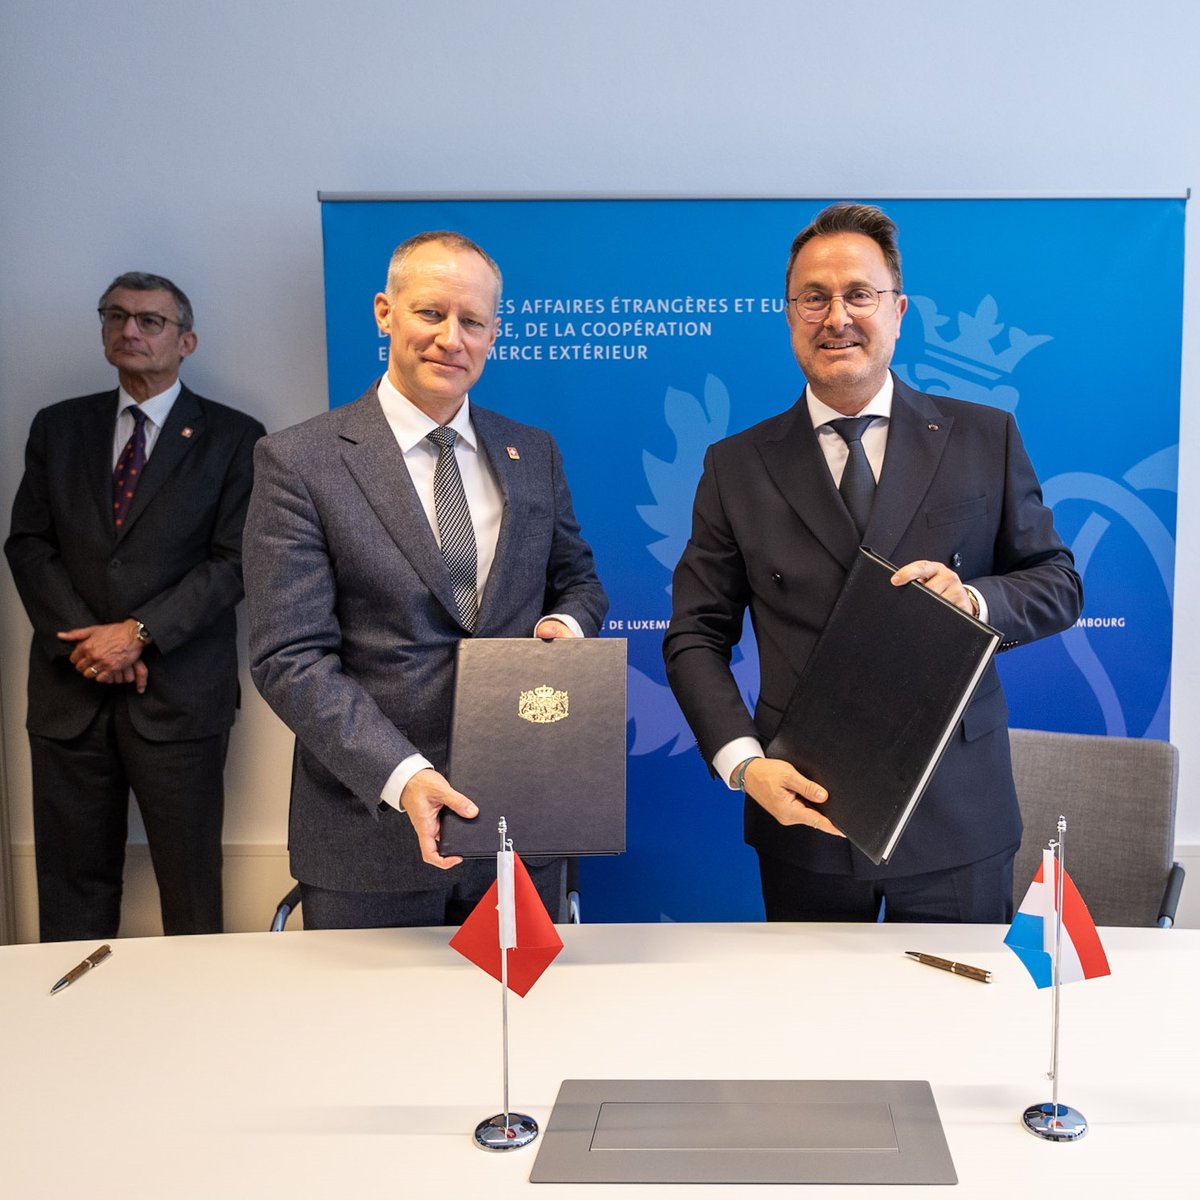 Unterzeichnung Informationsschutzabkommen mit #Luxembourg: Staatssekretär für Sicherheitspolitik Dr. Markus Mäder & @Xavier_Bettel schaffen die Grundlage für den Austausch von klassifizierten Informationen nach internationalem Standard. bit.ly/3wEYYCQ #Cyber #Sicherheit